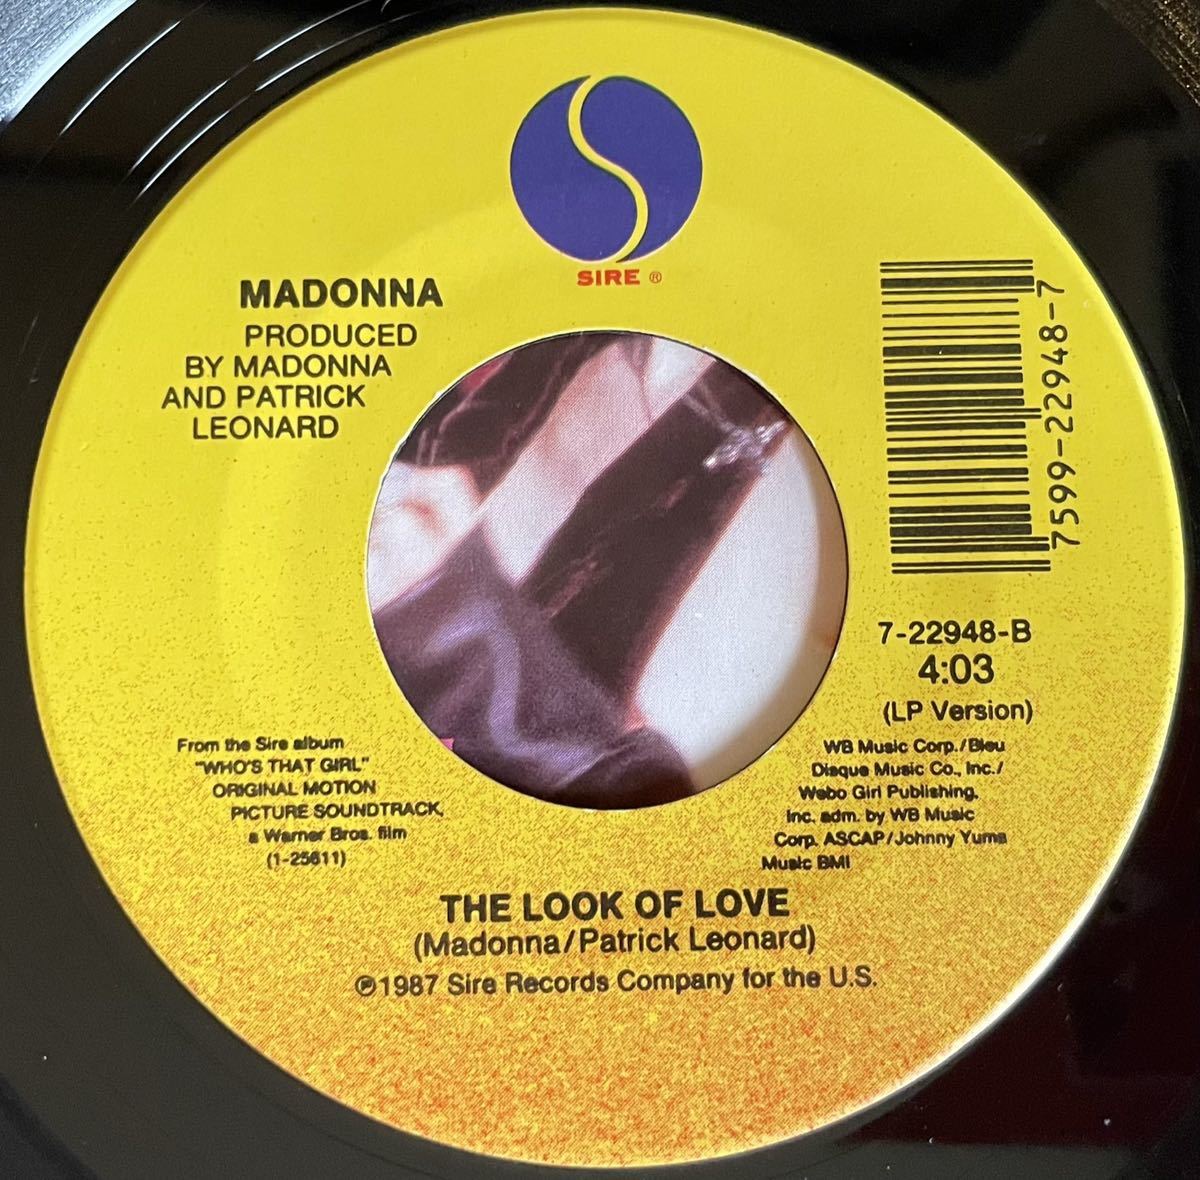 EP盤 Madonna / Express Yourself US盤 オリジナル7インチ盤その他プロモーション盤 レア盤 人気レコード 多数出品。_画像3